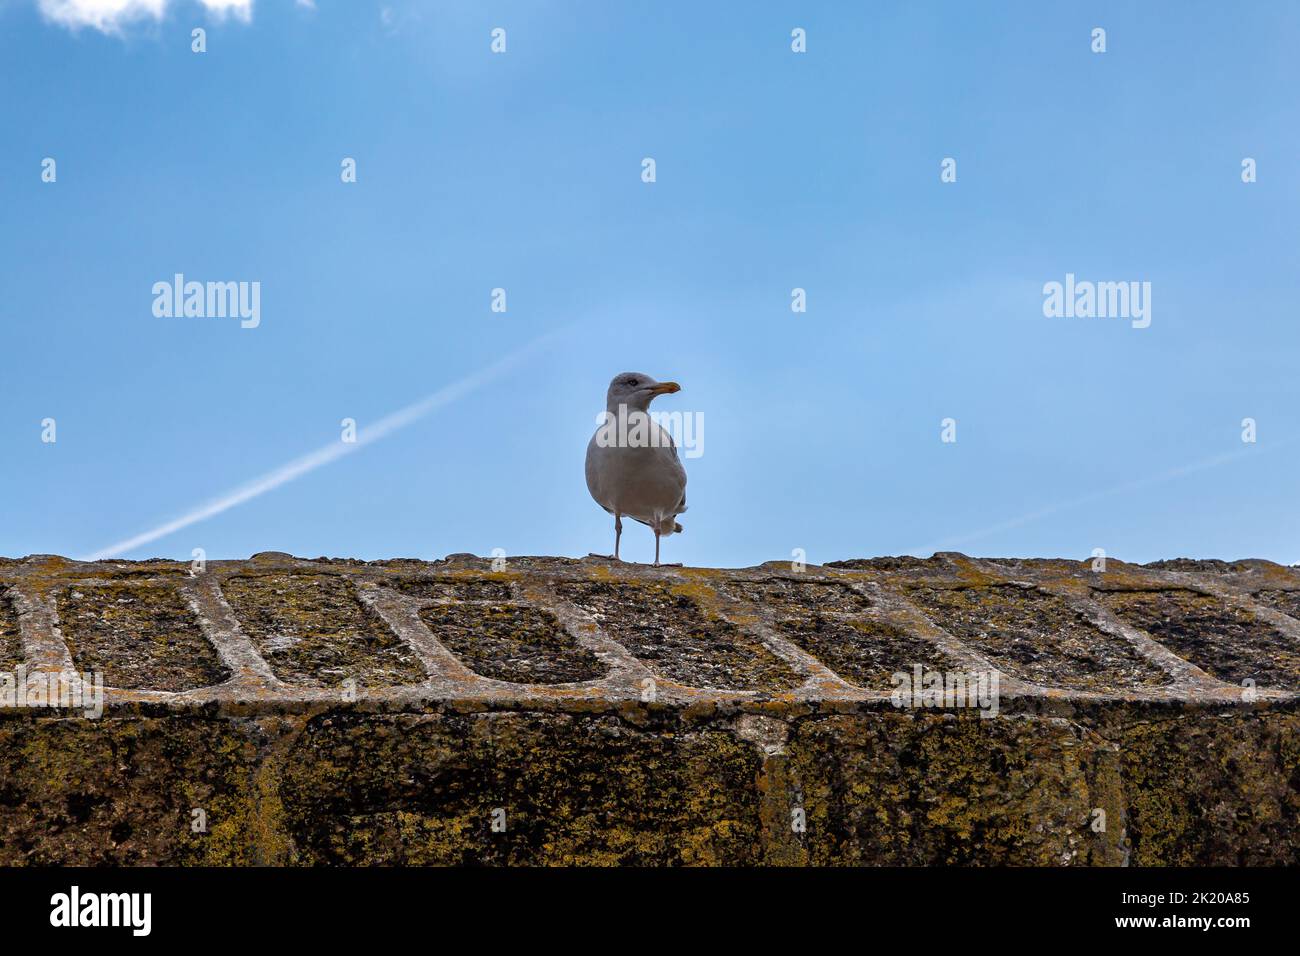 Mirando hacia arriba una gaviota encaramada en una pared de piedra, con un cielo azul detrás Foto de stock